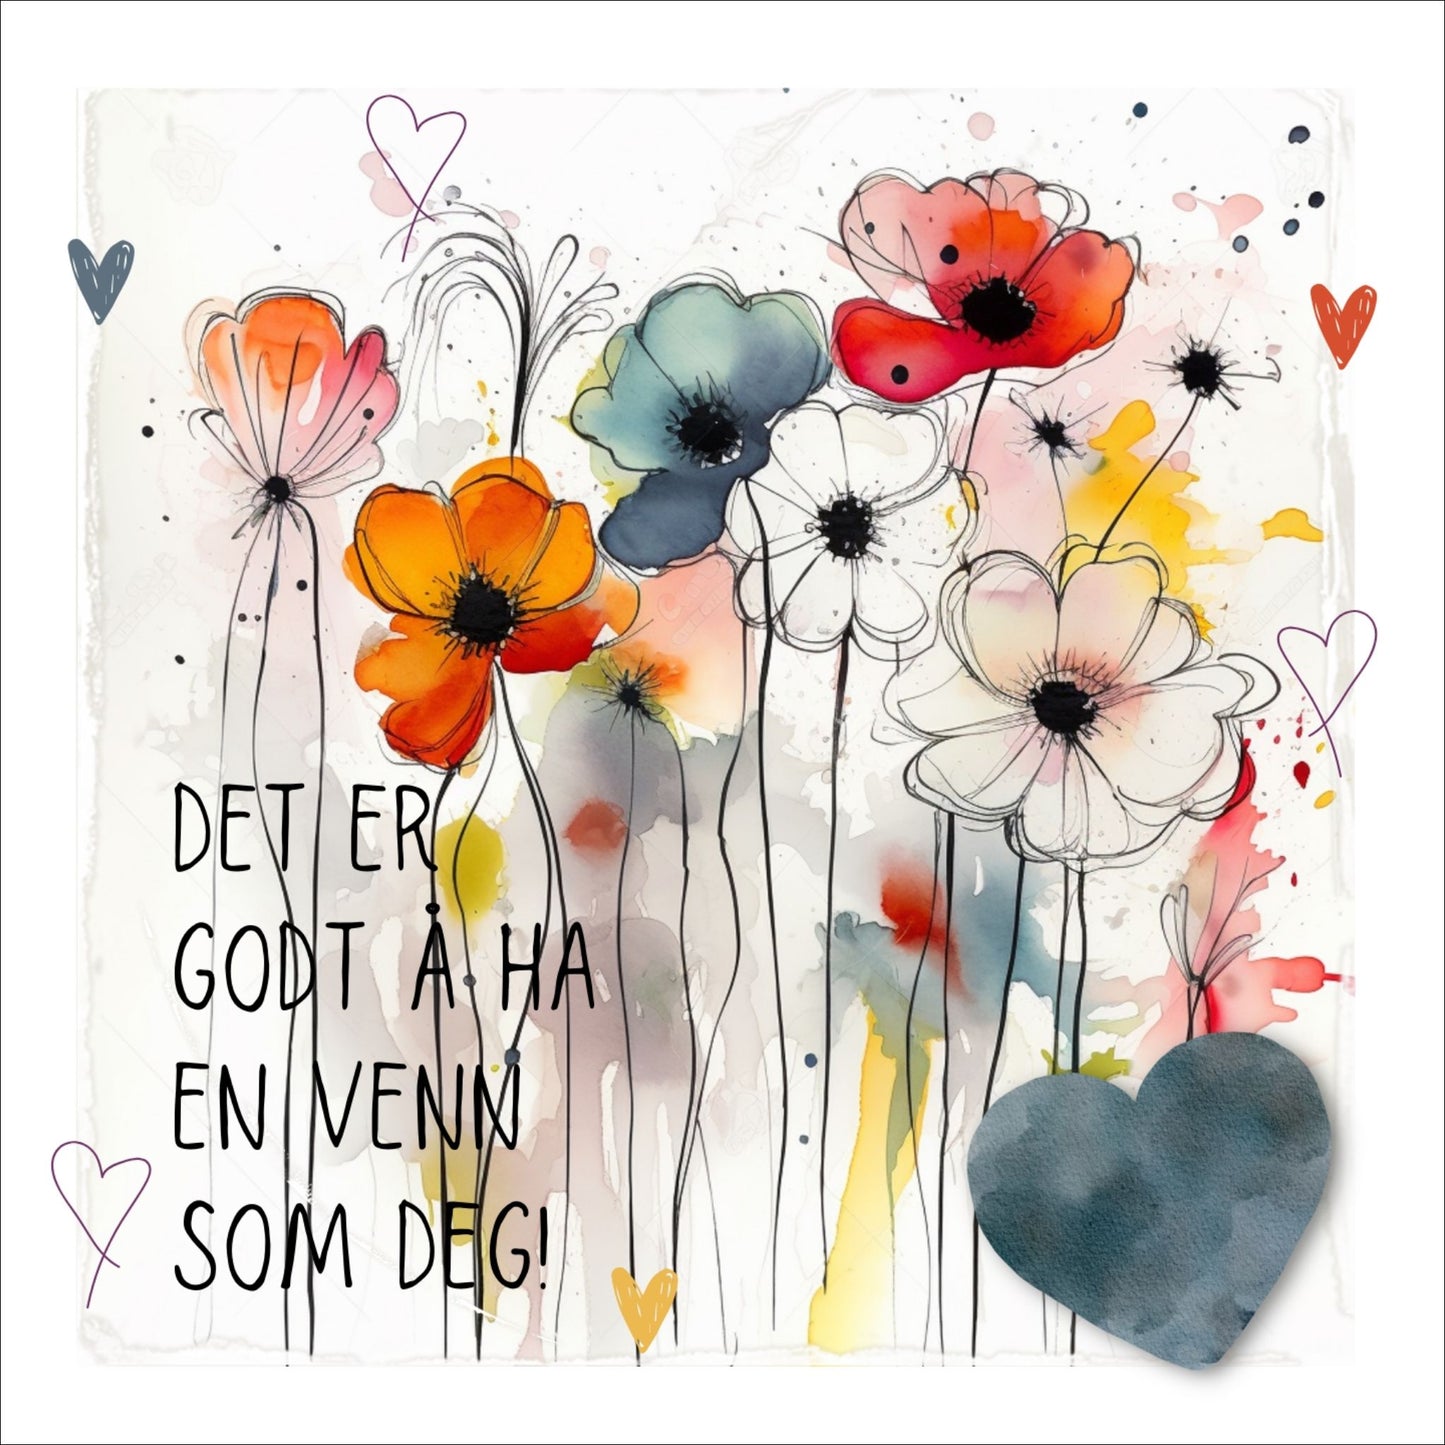 Plakat med lysegult hjerte og tekst "Det er godt å ha en venn som deg" - og et motiv med blomster i gul, rød, hvit, blå og oransje. Med hvit kant på 1,5 cm. 